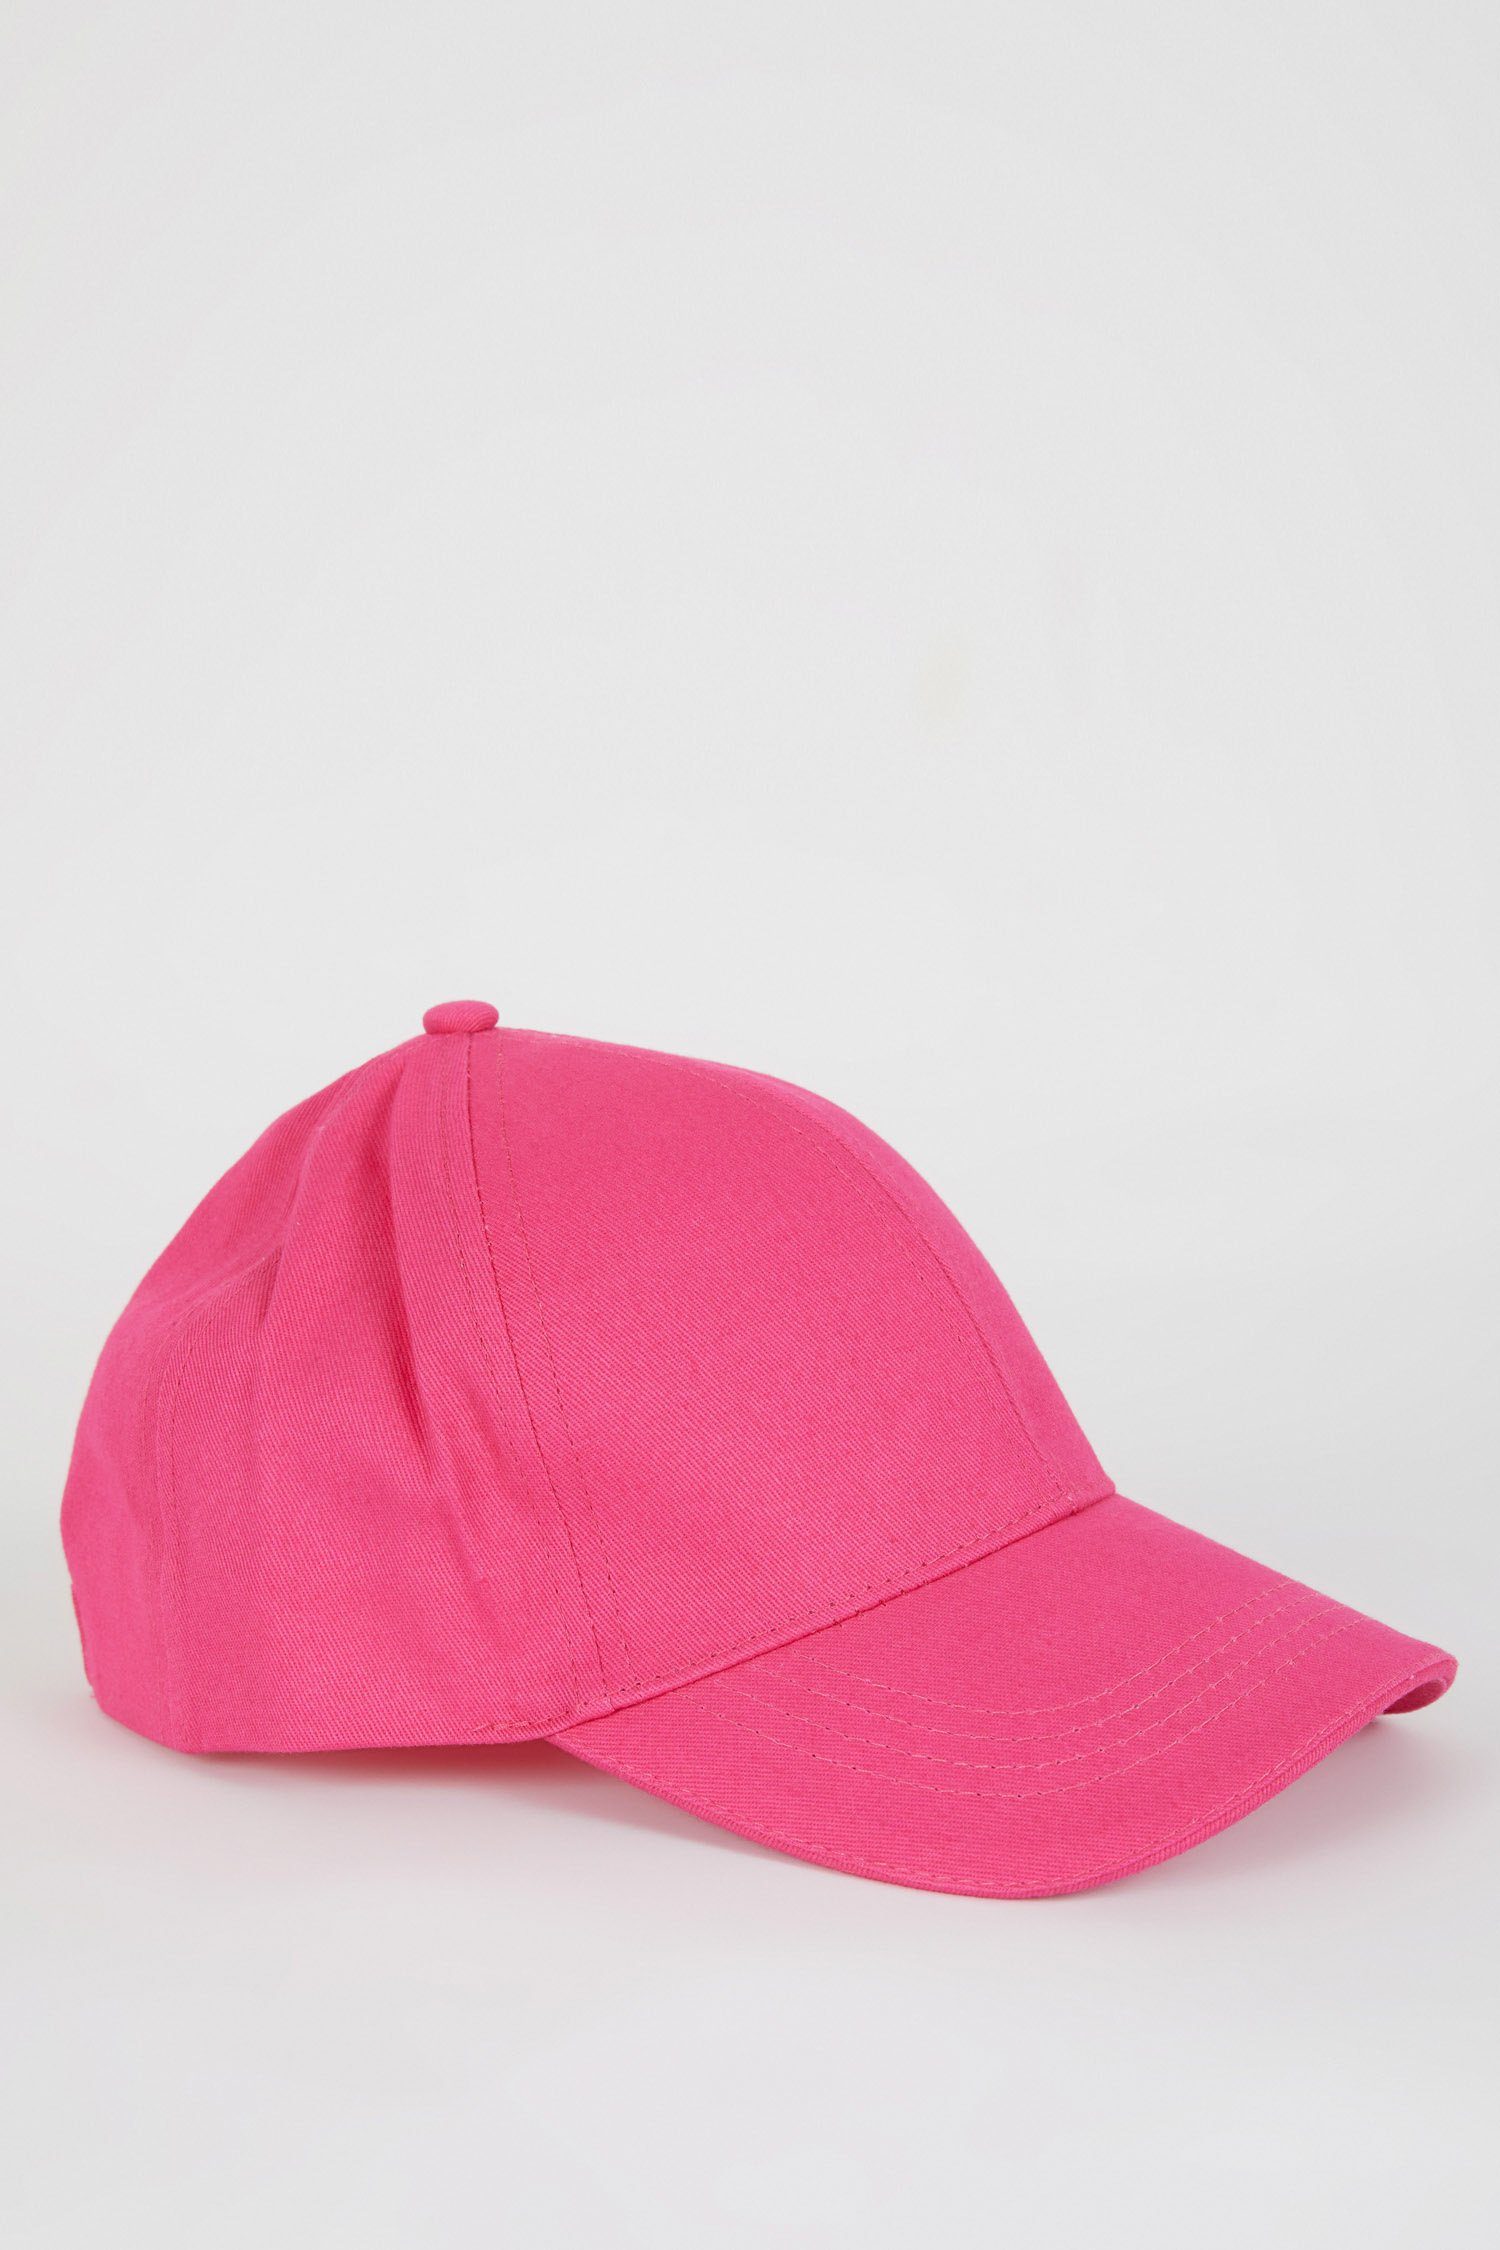 DeFacto Damen Cap Pink Neon Cap Snapback